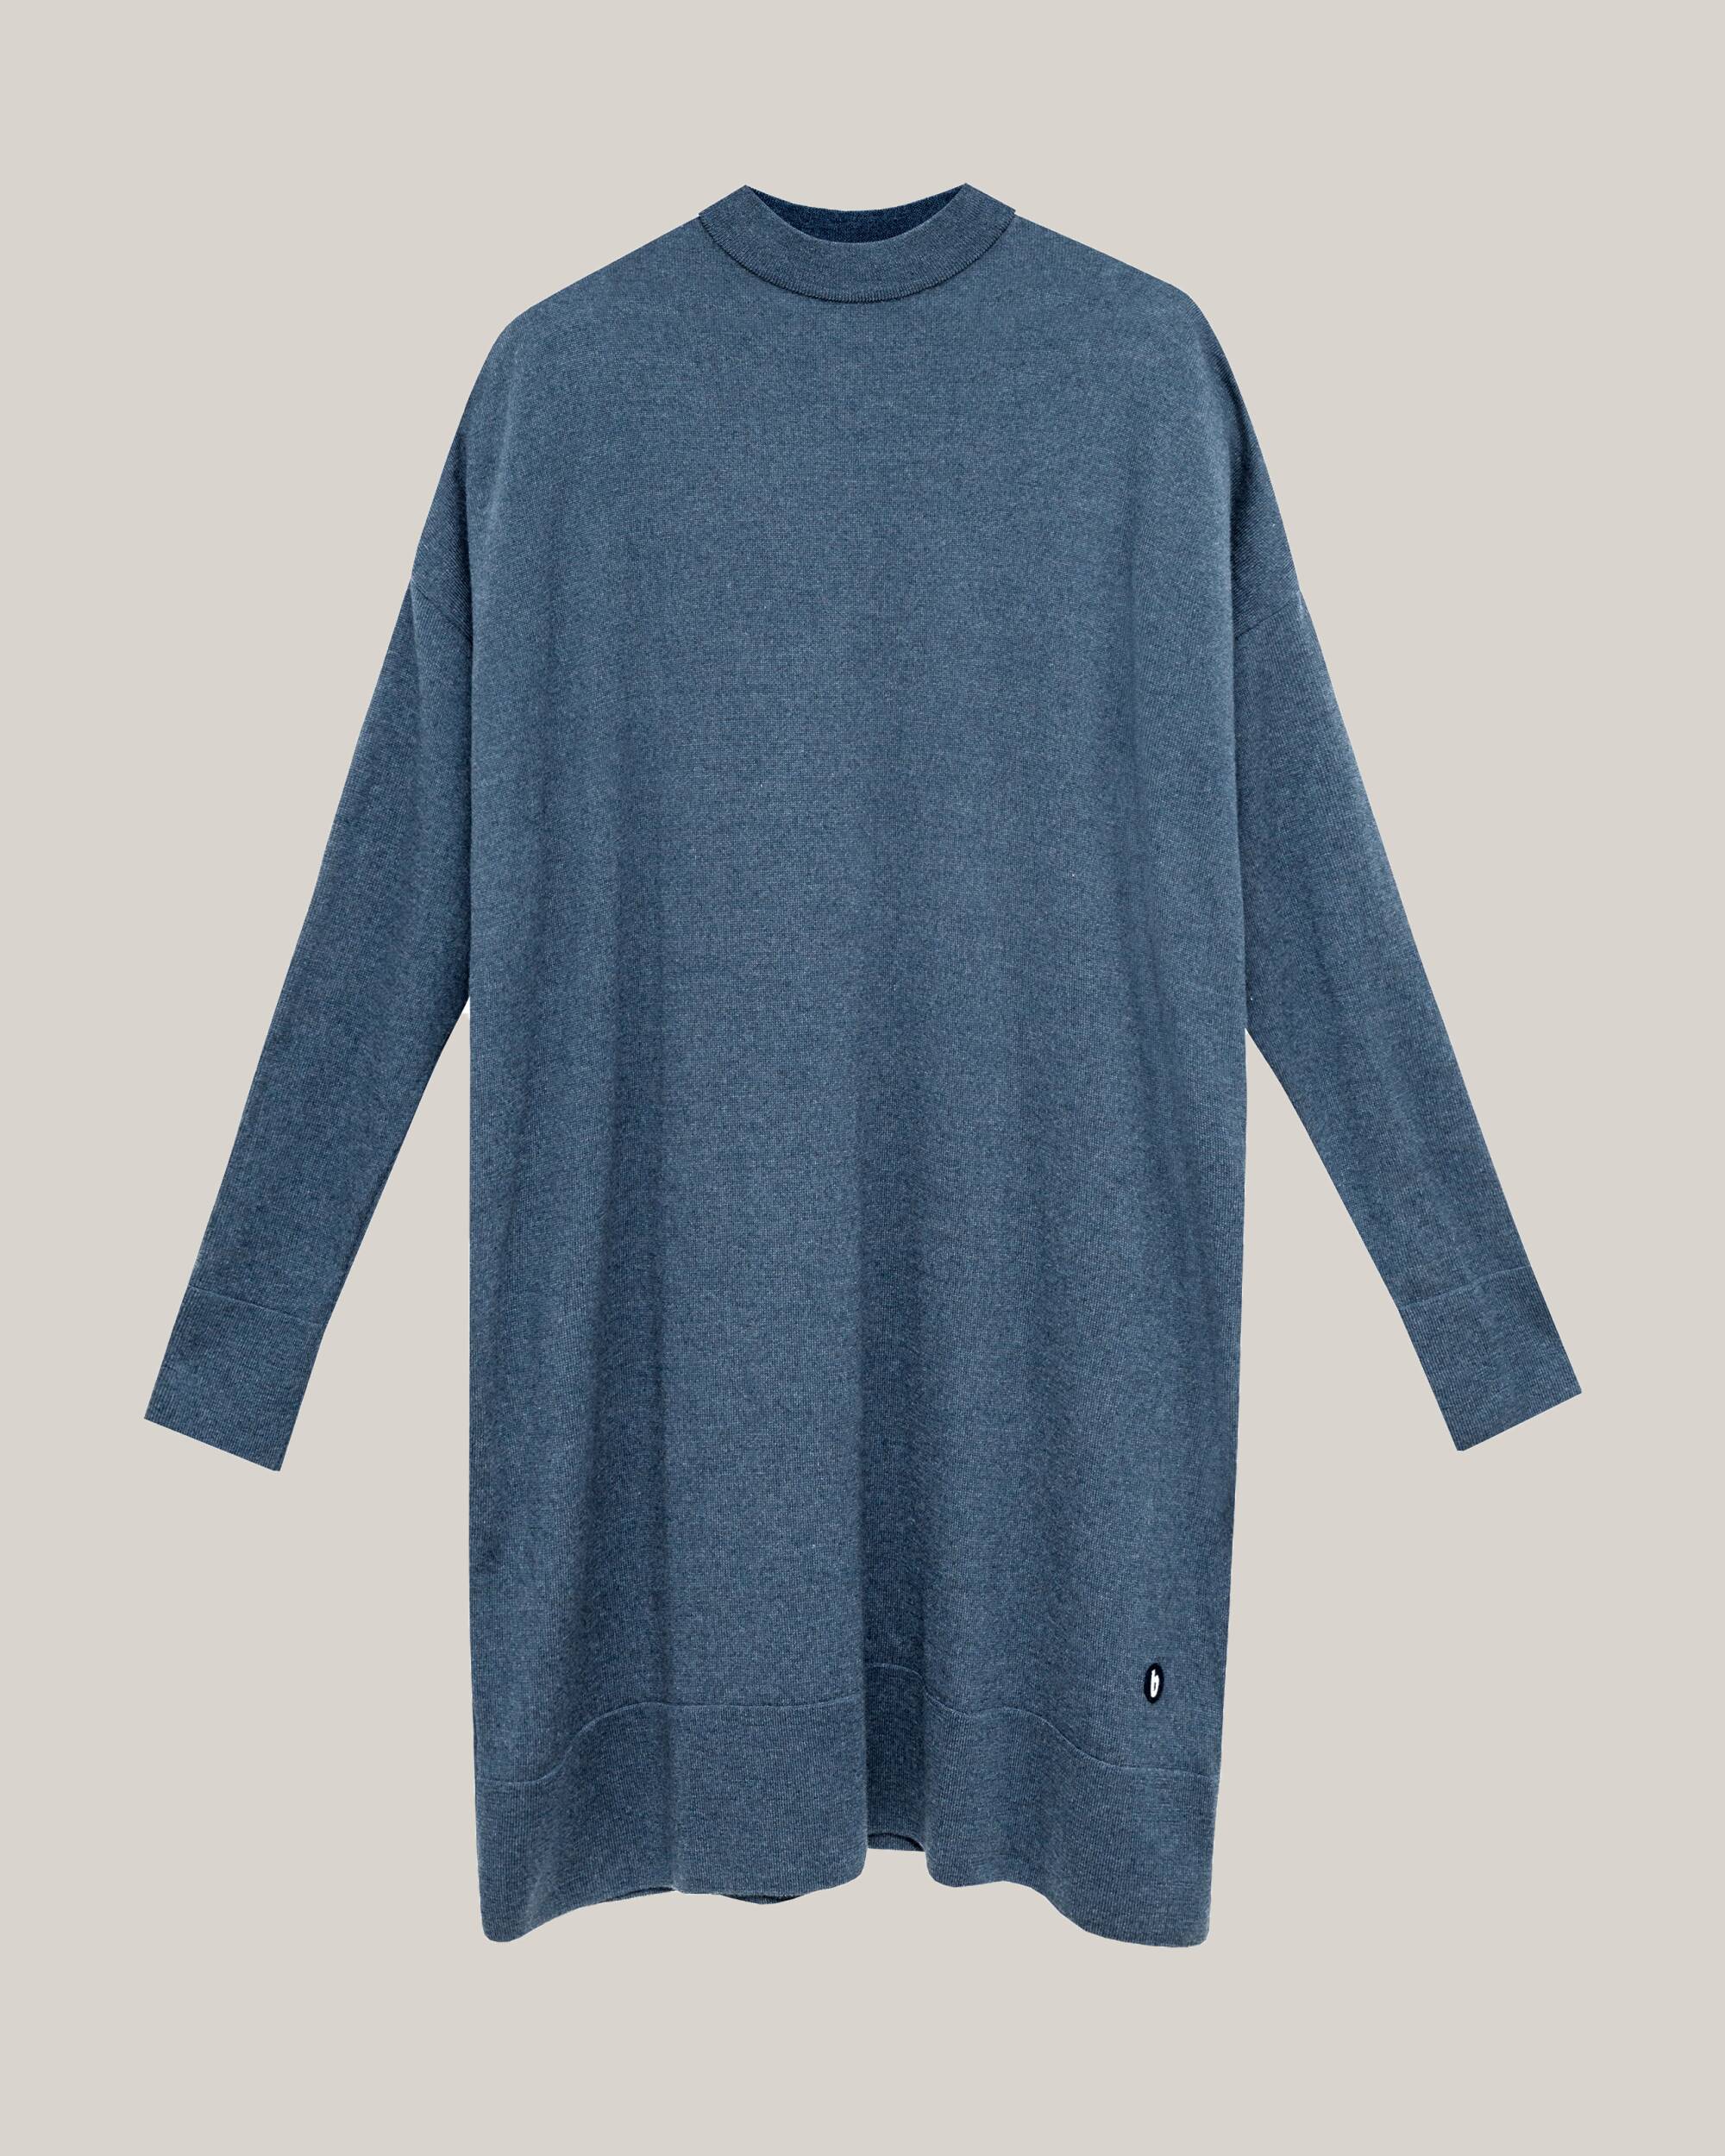 Pullover "Winter Day" in blau aus 100% Bio - Merinowolle von Brava Fabrics